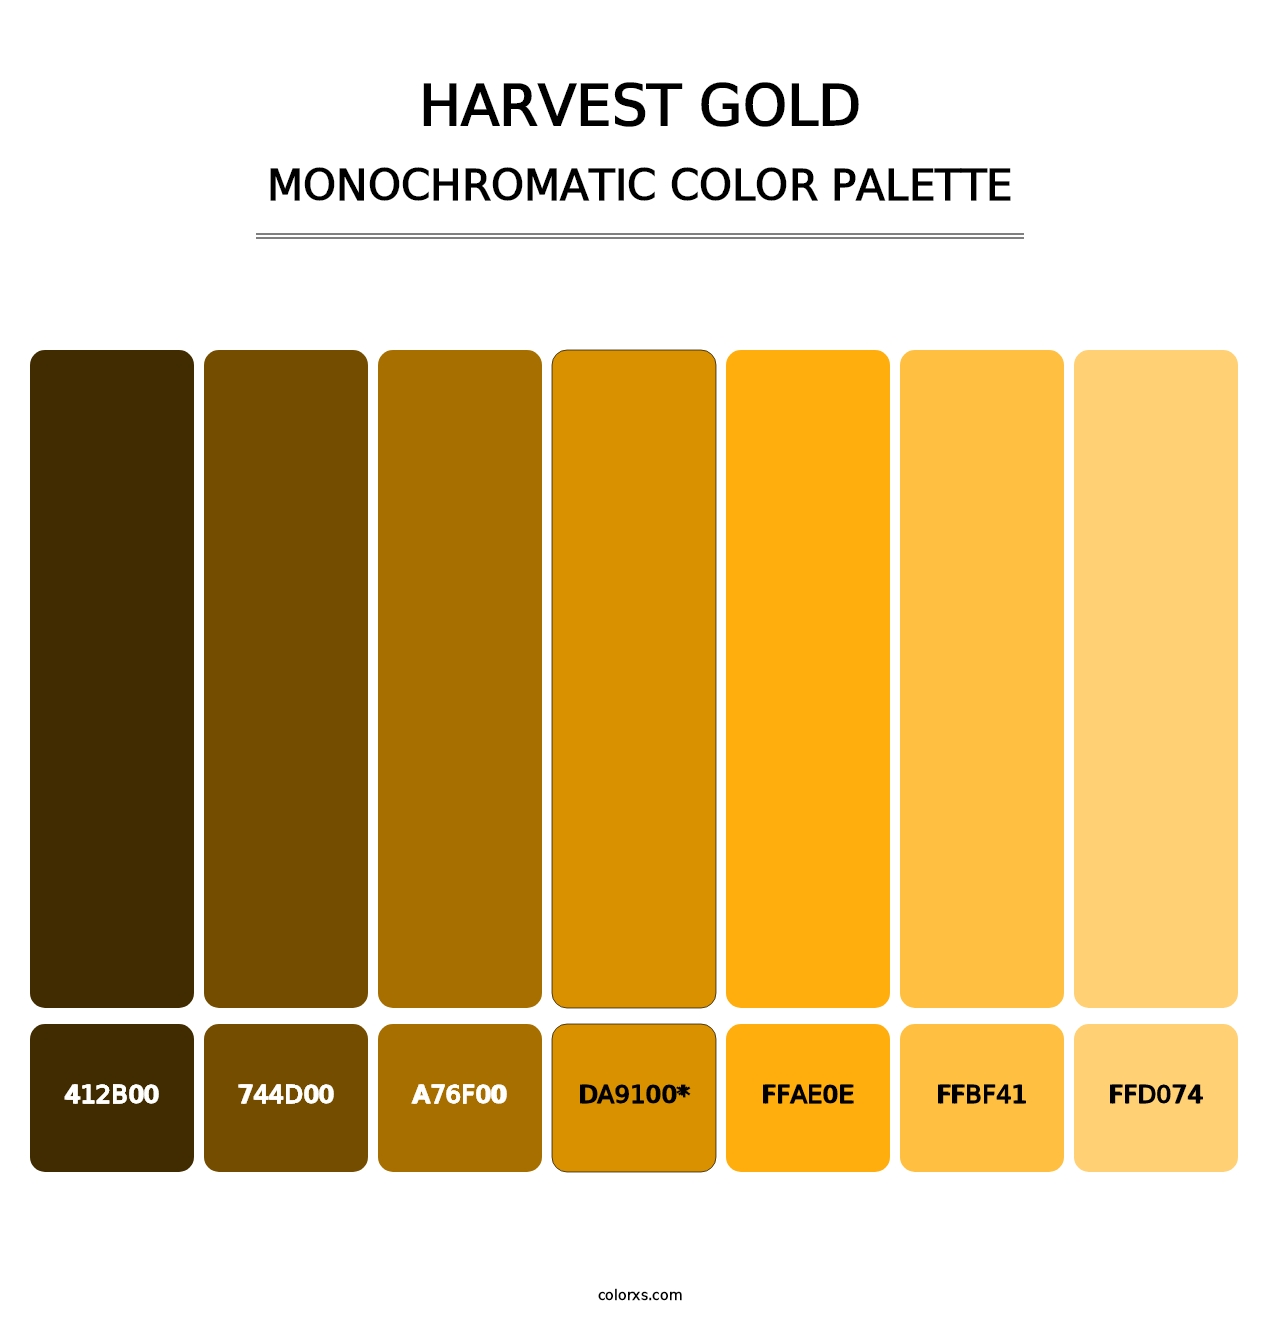 Harvest Gold - Monochromatic Color Palette